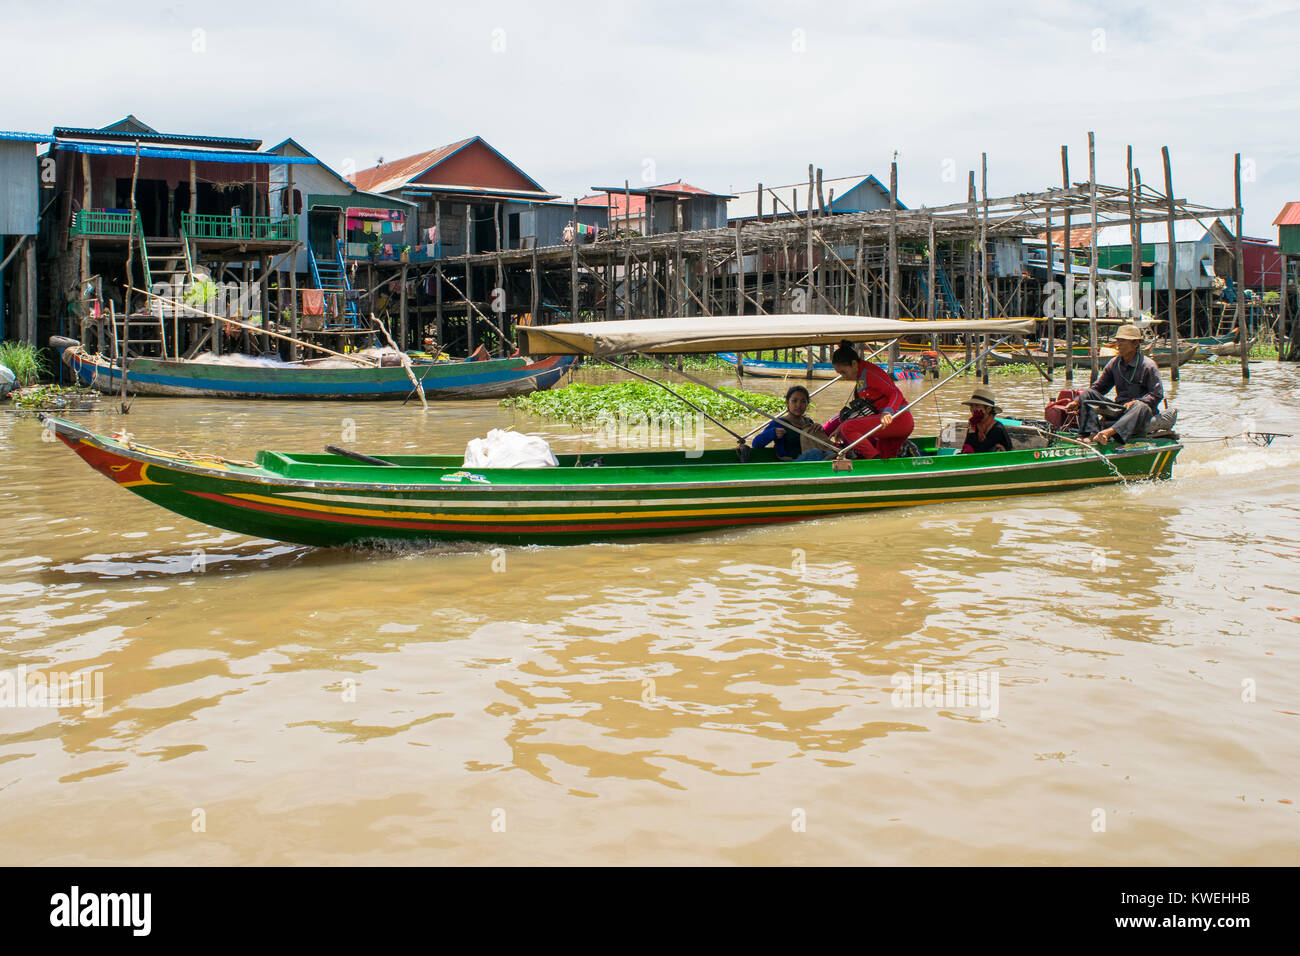 Trois personnes d'Asie Cambodge sur un petit bateau à moteur long vert en passant par la plaine inondable de Grand Lac Tonle Sap. Bateau avec tente pour l'ombre Banque D'Images